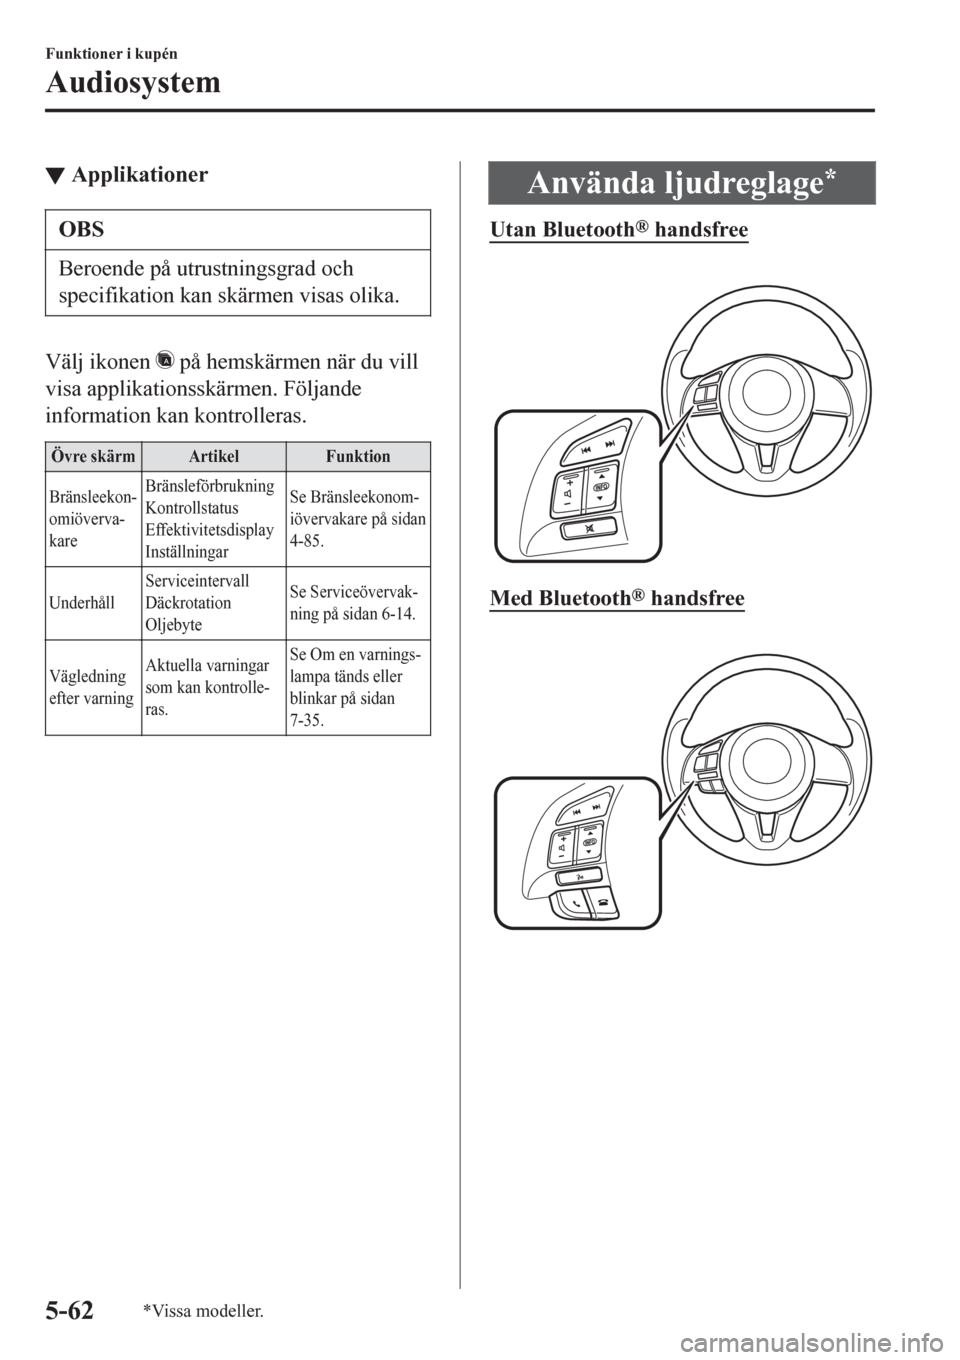 MAZDA MODEL CX-3 2016  Ägarmanual (in Swedish) ▼Applikationer
OBS
Beroende på utrustningsgrad och
specifikation kan skärmen visas olika.
Välj ikonen  på hemskärmen när du vill
visa applikationsskärmen. Följande
information kan kontroller